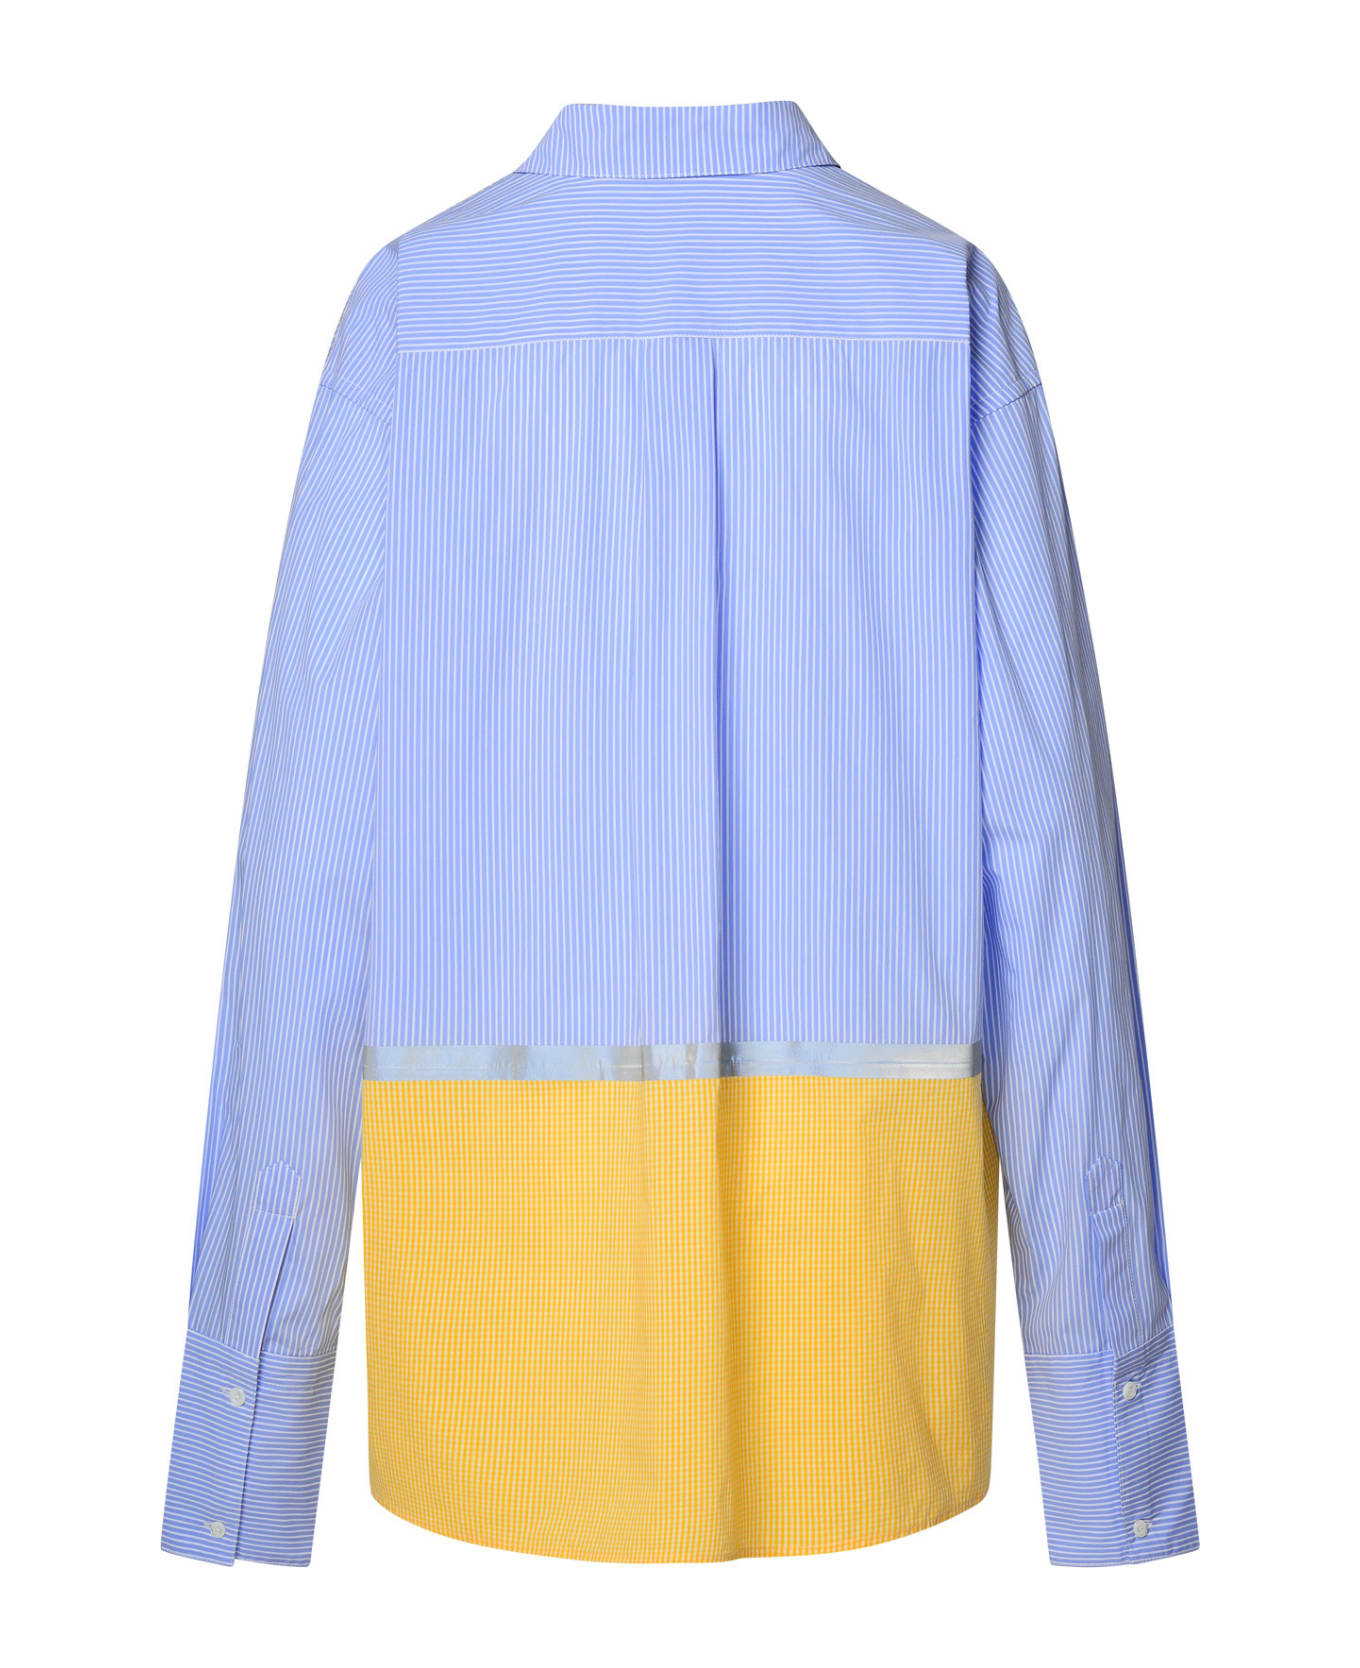 GCDS Multicolor Cotton Blend Shirt - Light Blue